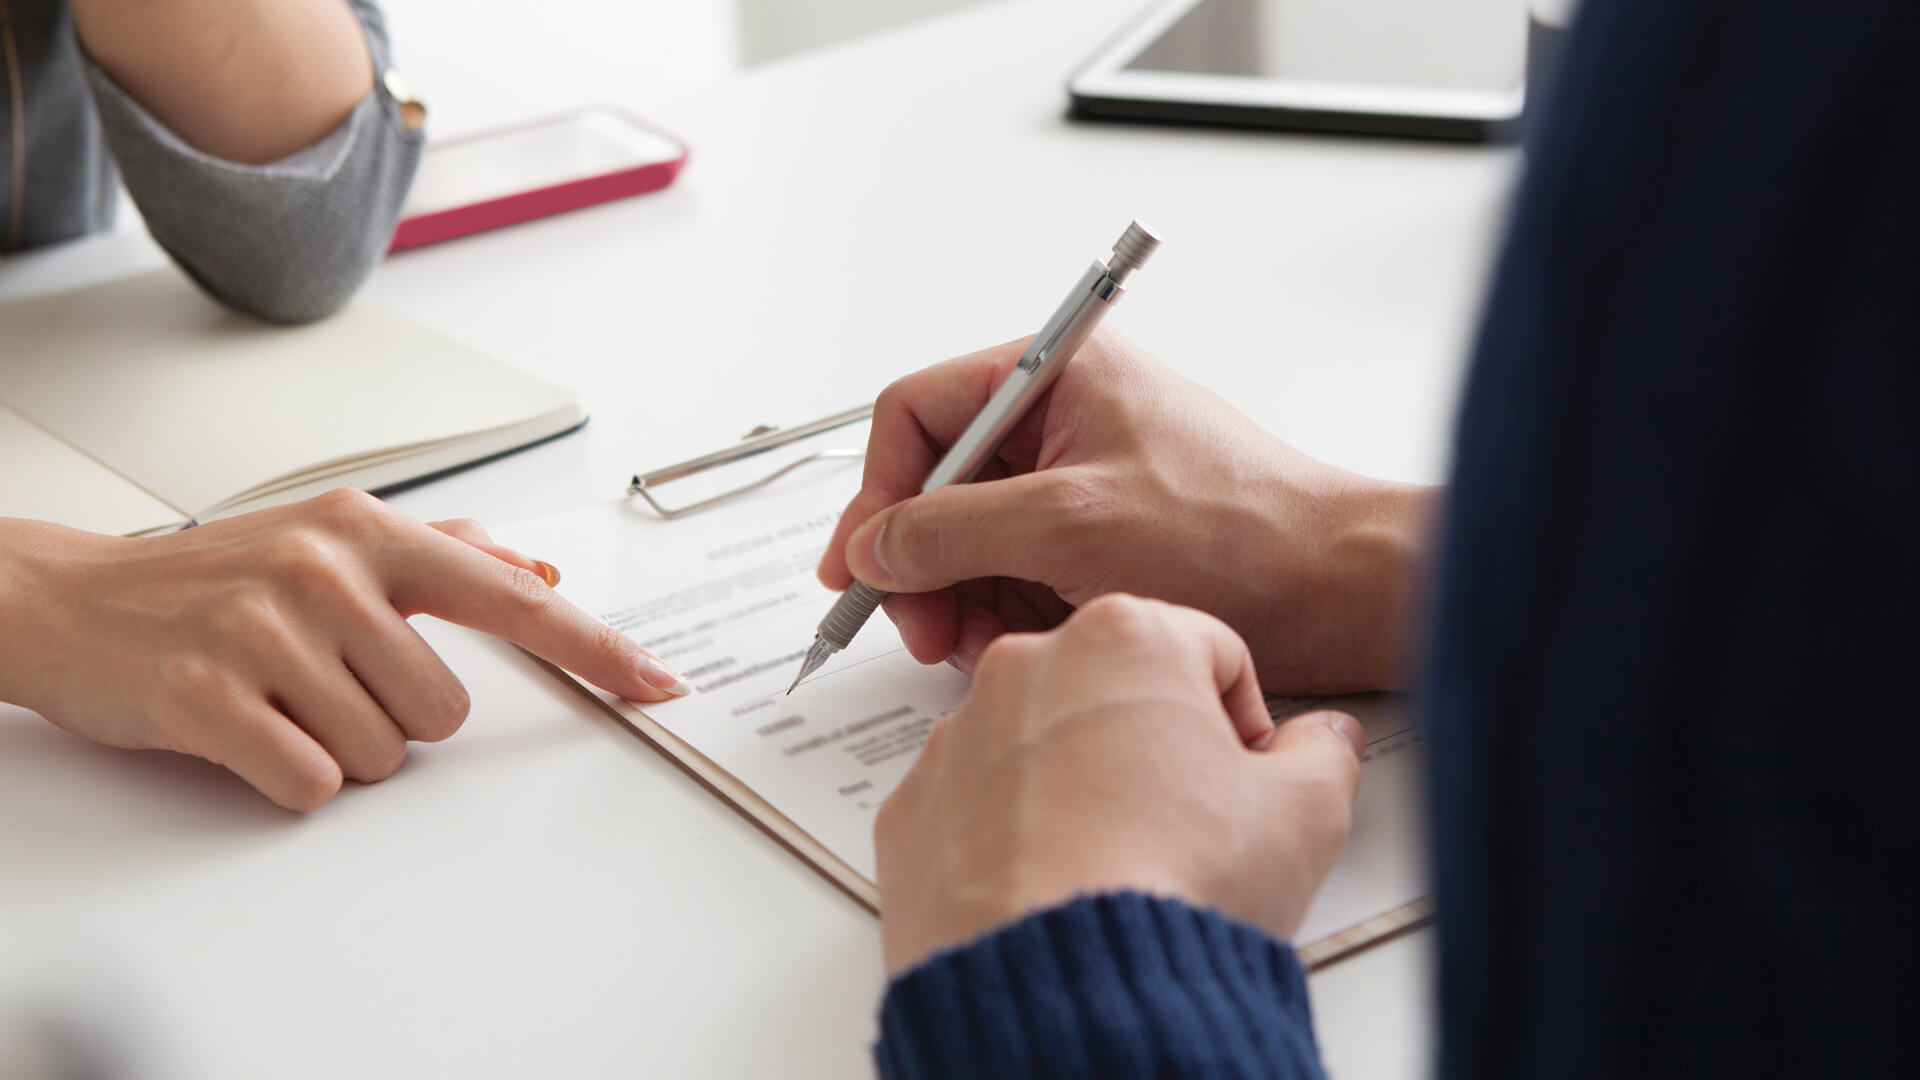 Deux individus collaborent sur une candidature, l'un tenant un stylo et pointant une section spécifique du document.